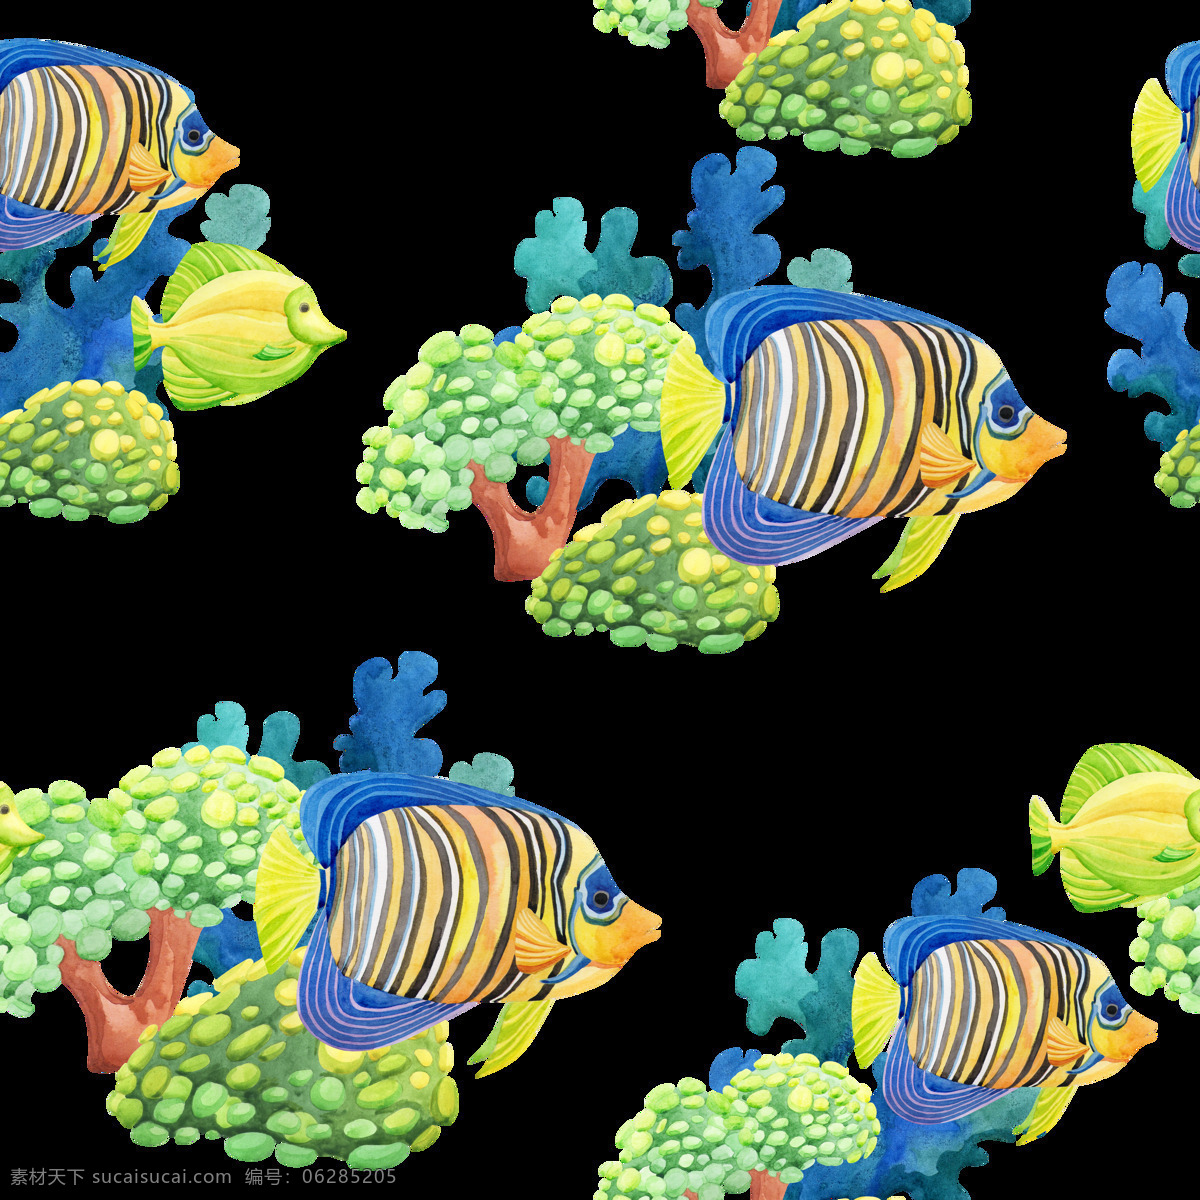 手绘 西 太平洋 珊瑚礁 海域 背景 背景素材 蓝色 绿色 珊瑚 水彩 无脊椎动物 鱼儿 植物